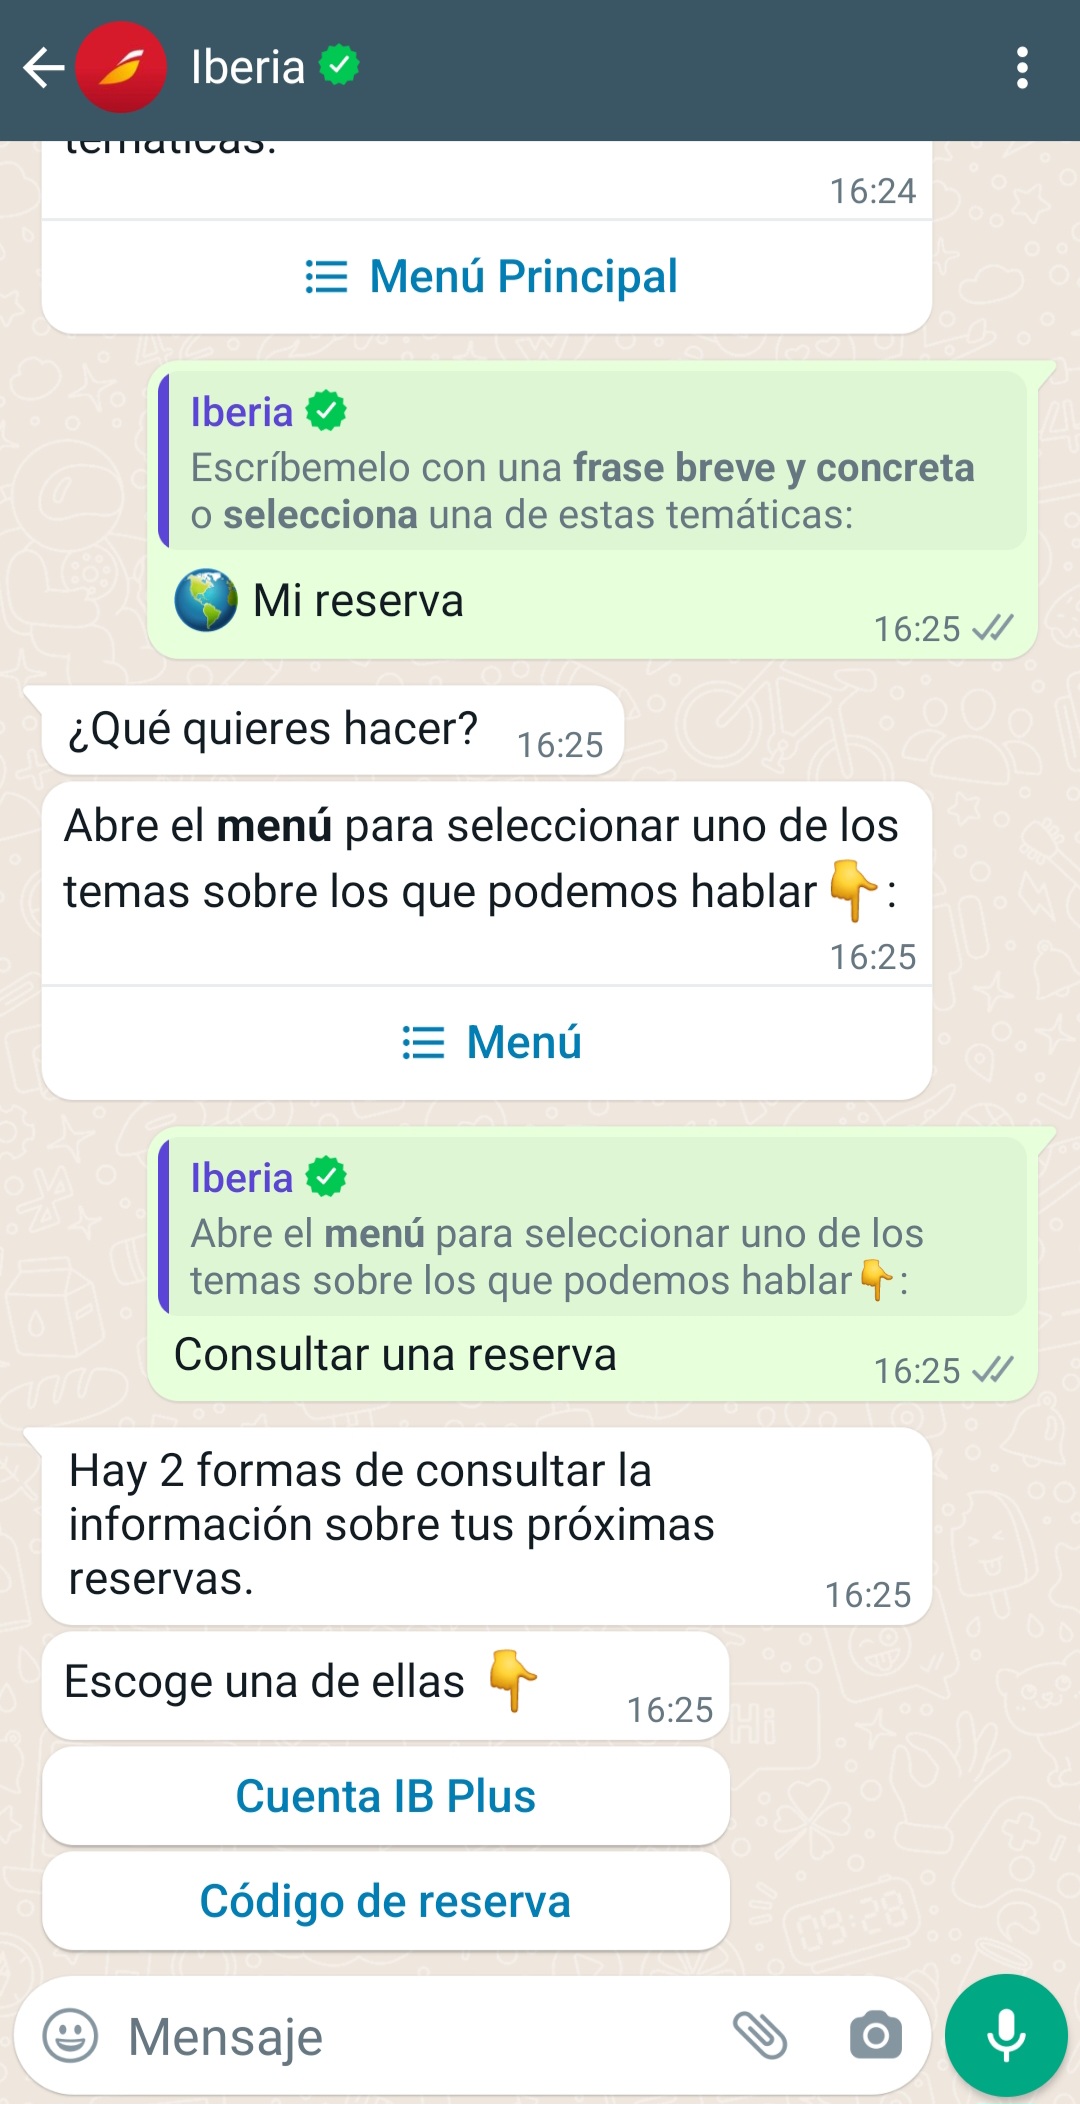 IBERIA Whatsapp API for Business